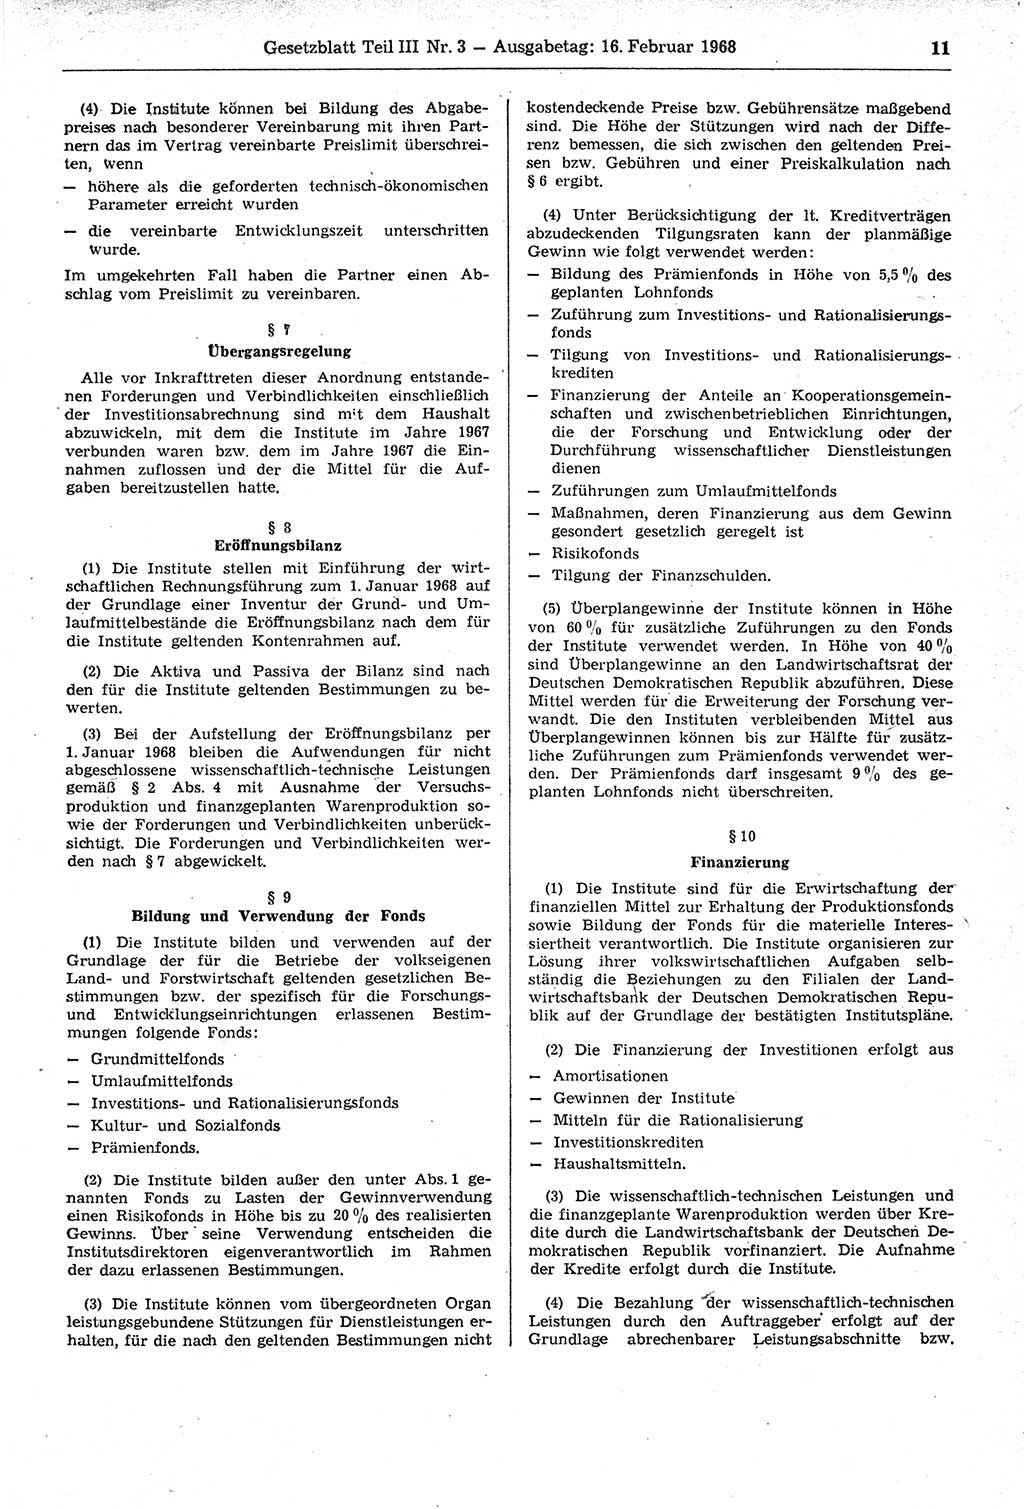 Gesetzblatt (GBl.) der Deutschen Demokratischen Republik (DDR) Teil ⅠⅠⅠ 1968, Seite 11 (GBl. DDR ⅠⅠⅠ 1968, S. 11)